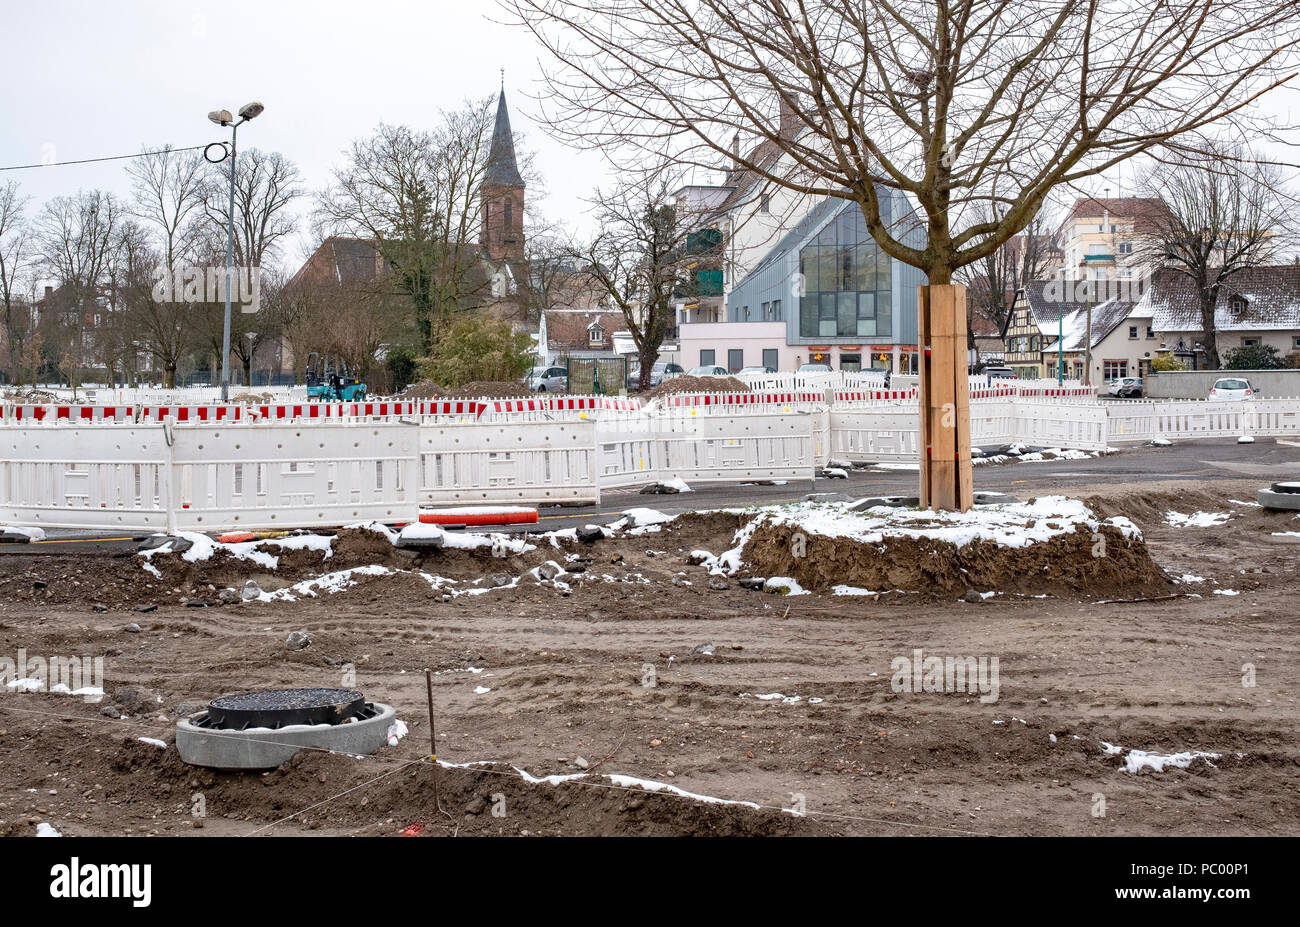 Strasburgo, tram preliminare sito in costruzione, linea e estensione, quadrato, sicurezza barriere in plastica, case, Alsazia, Francia, Europa Foto Stock